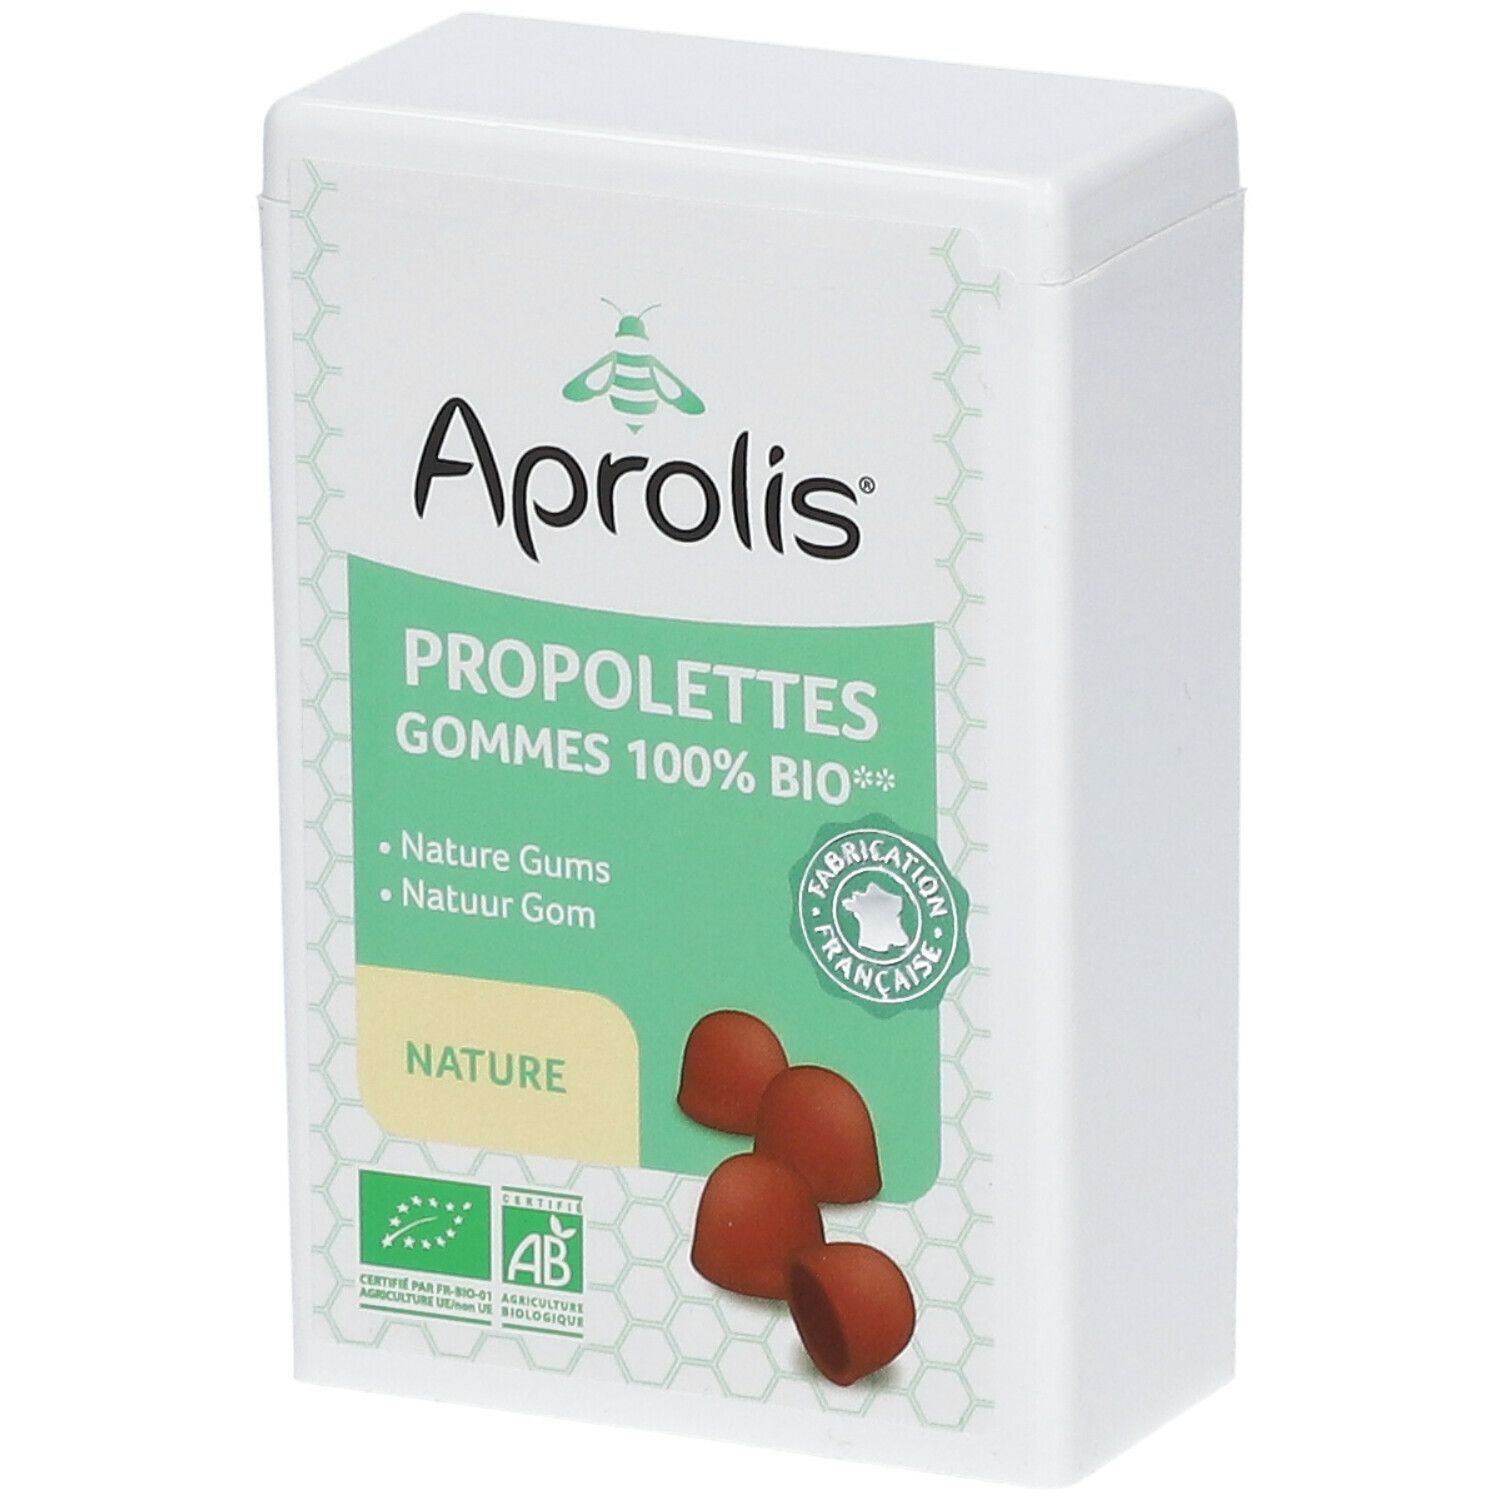 Aprolis® Propolettes 100% BIO Nature